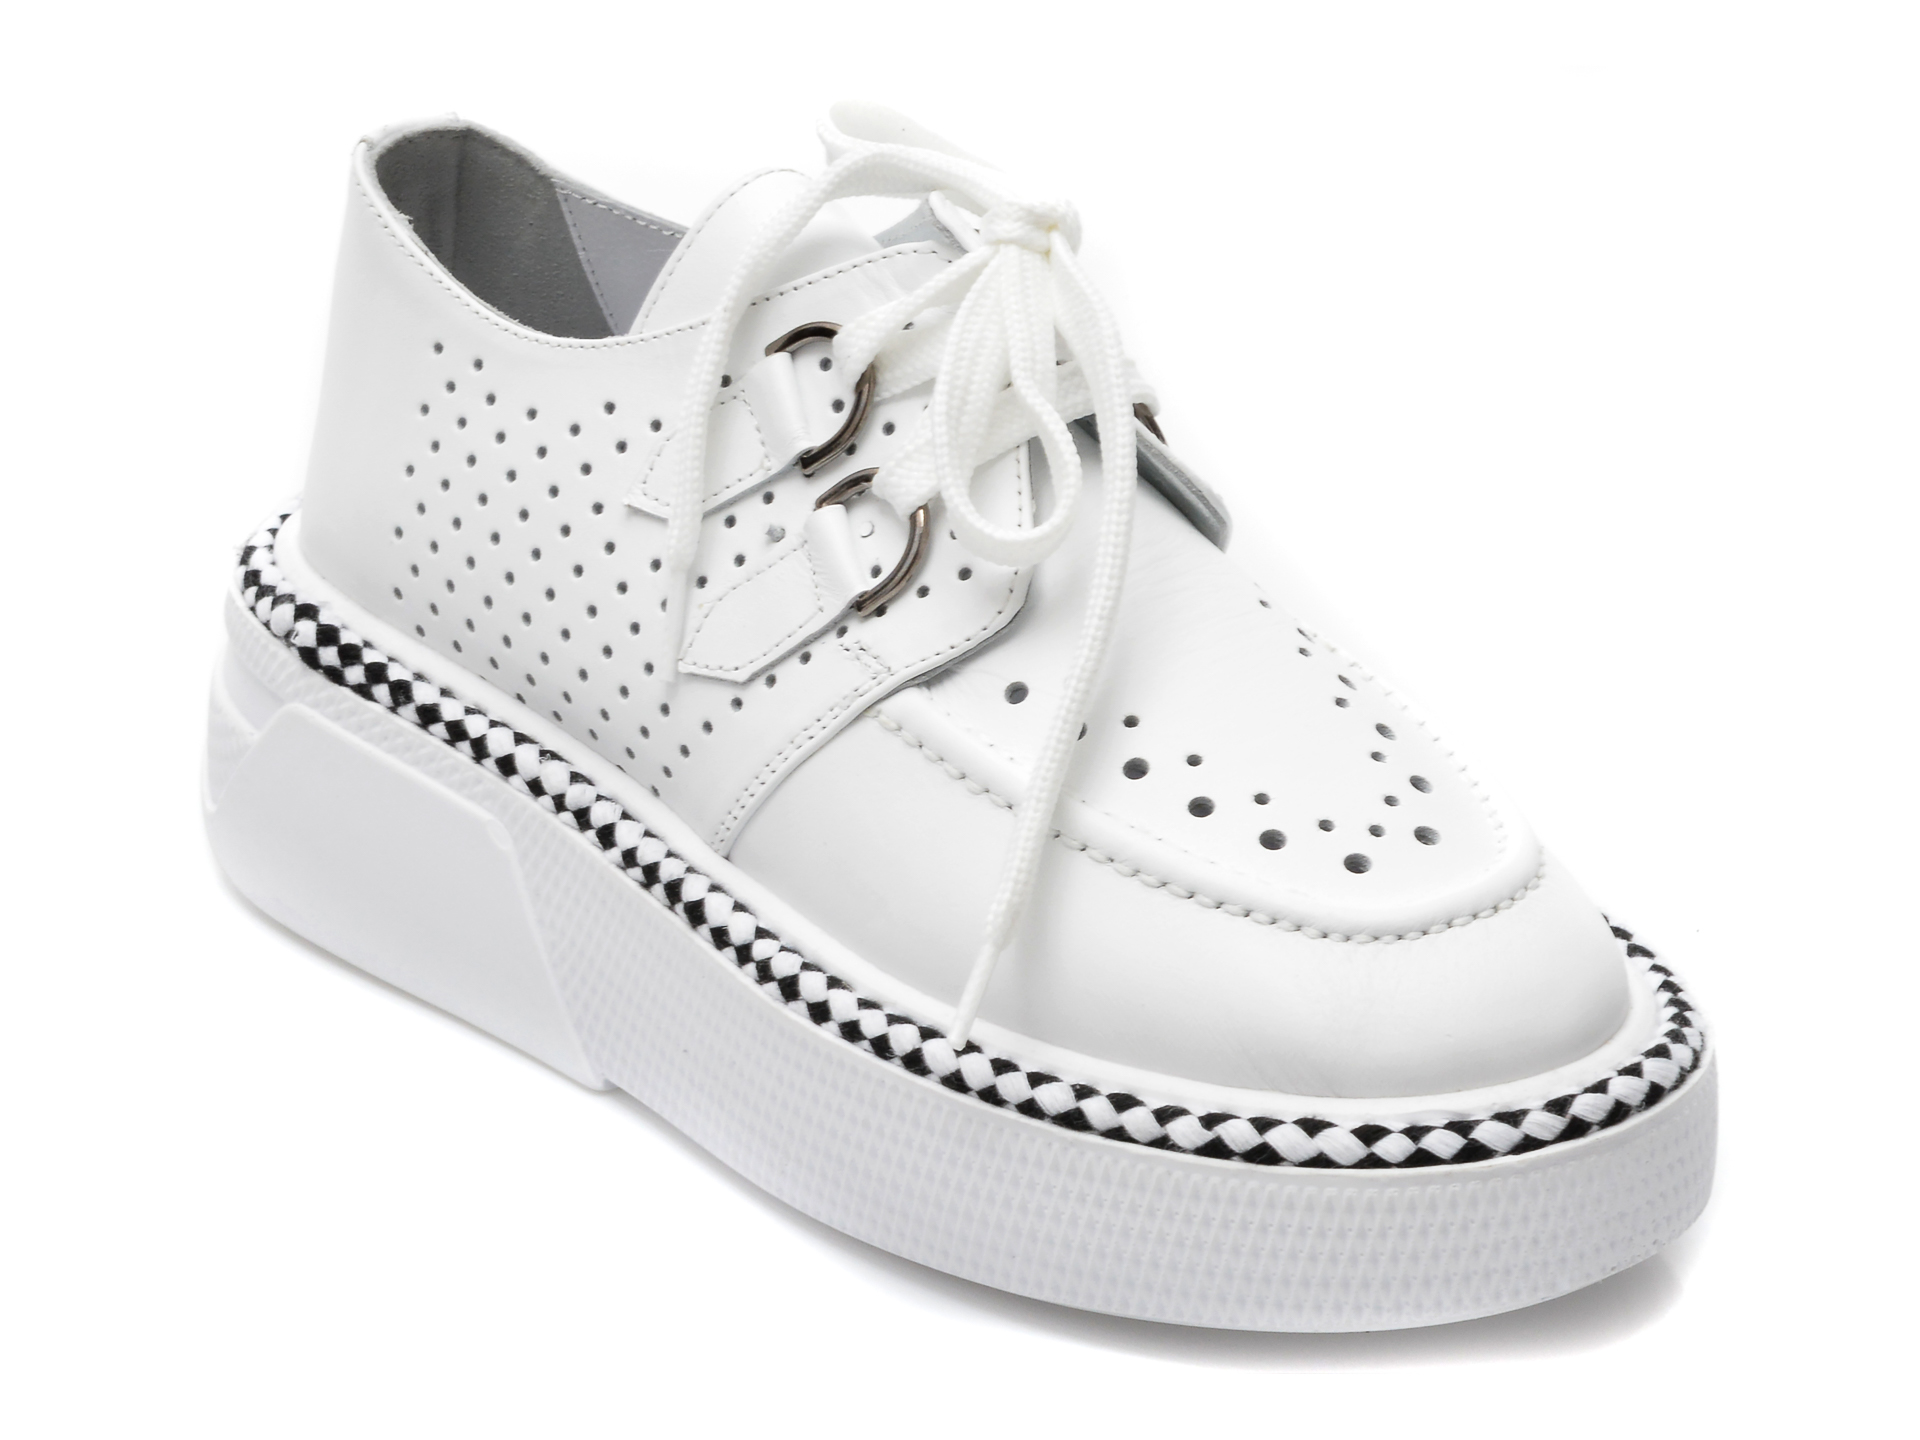 Pantofi CASSIDO albi, 123, din piele naturala CASSIDO